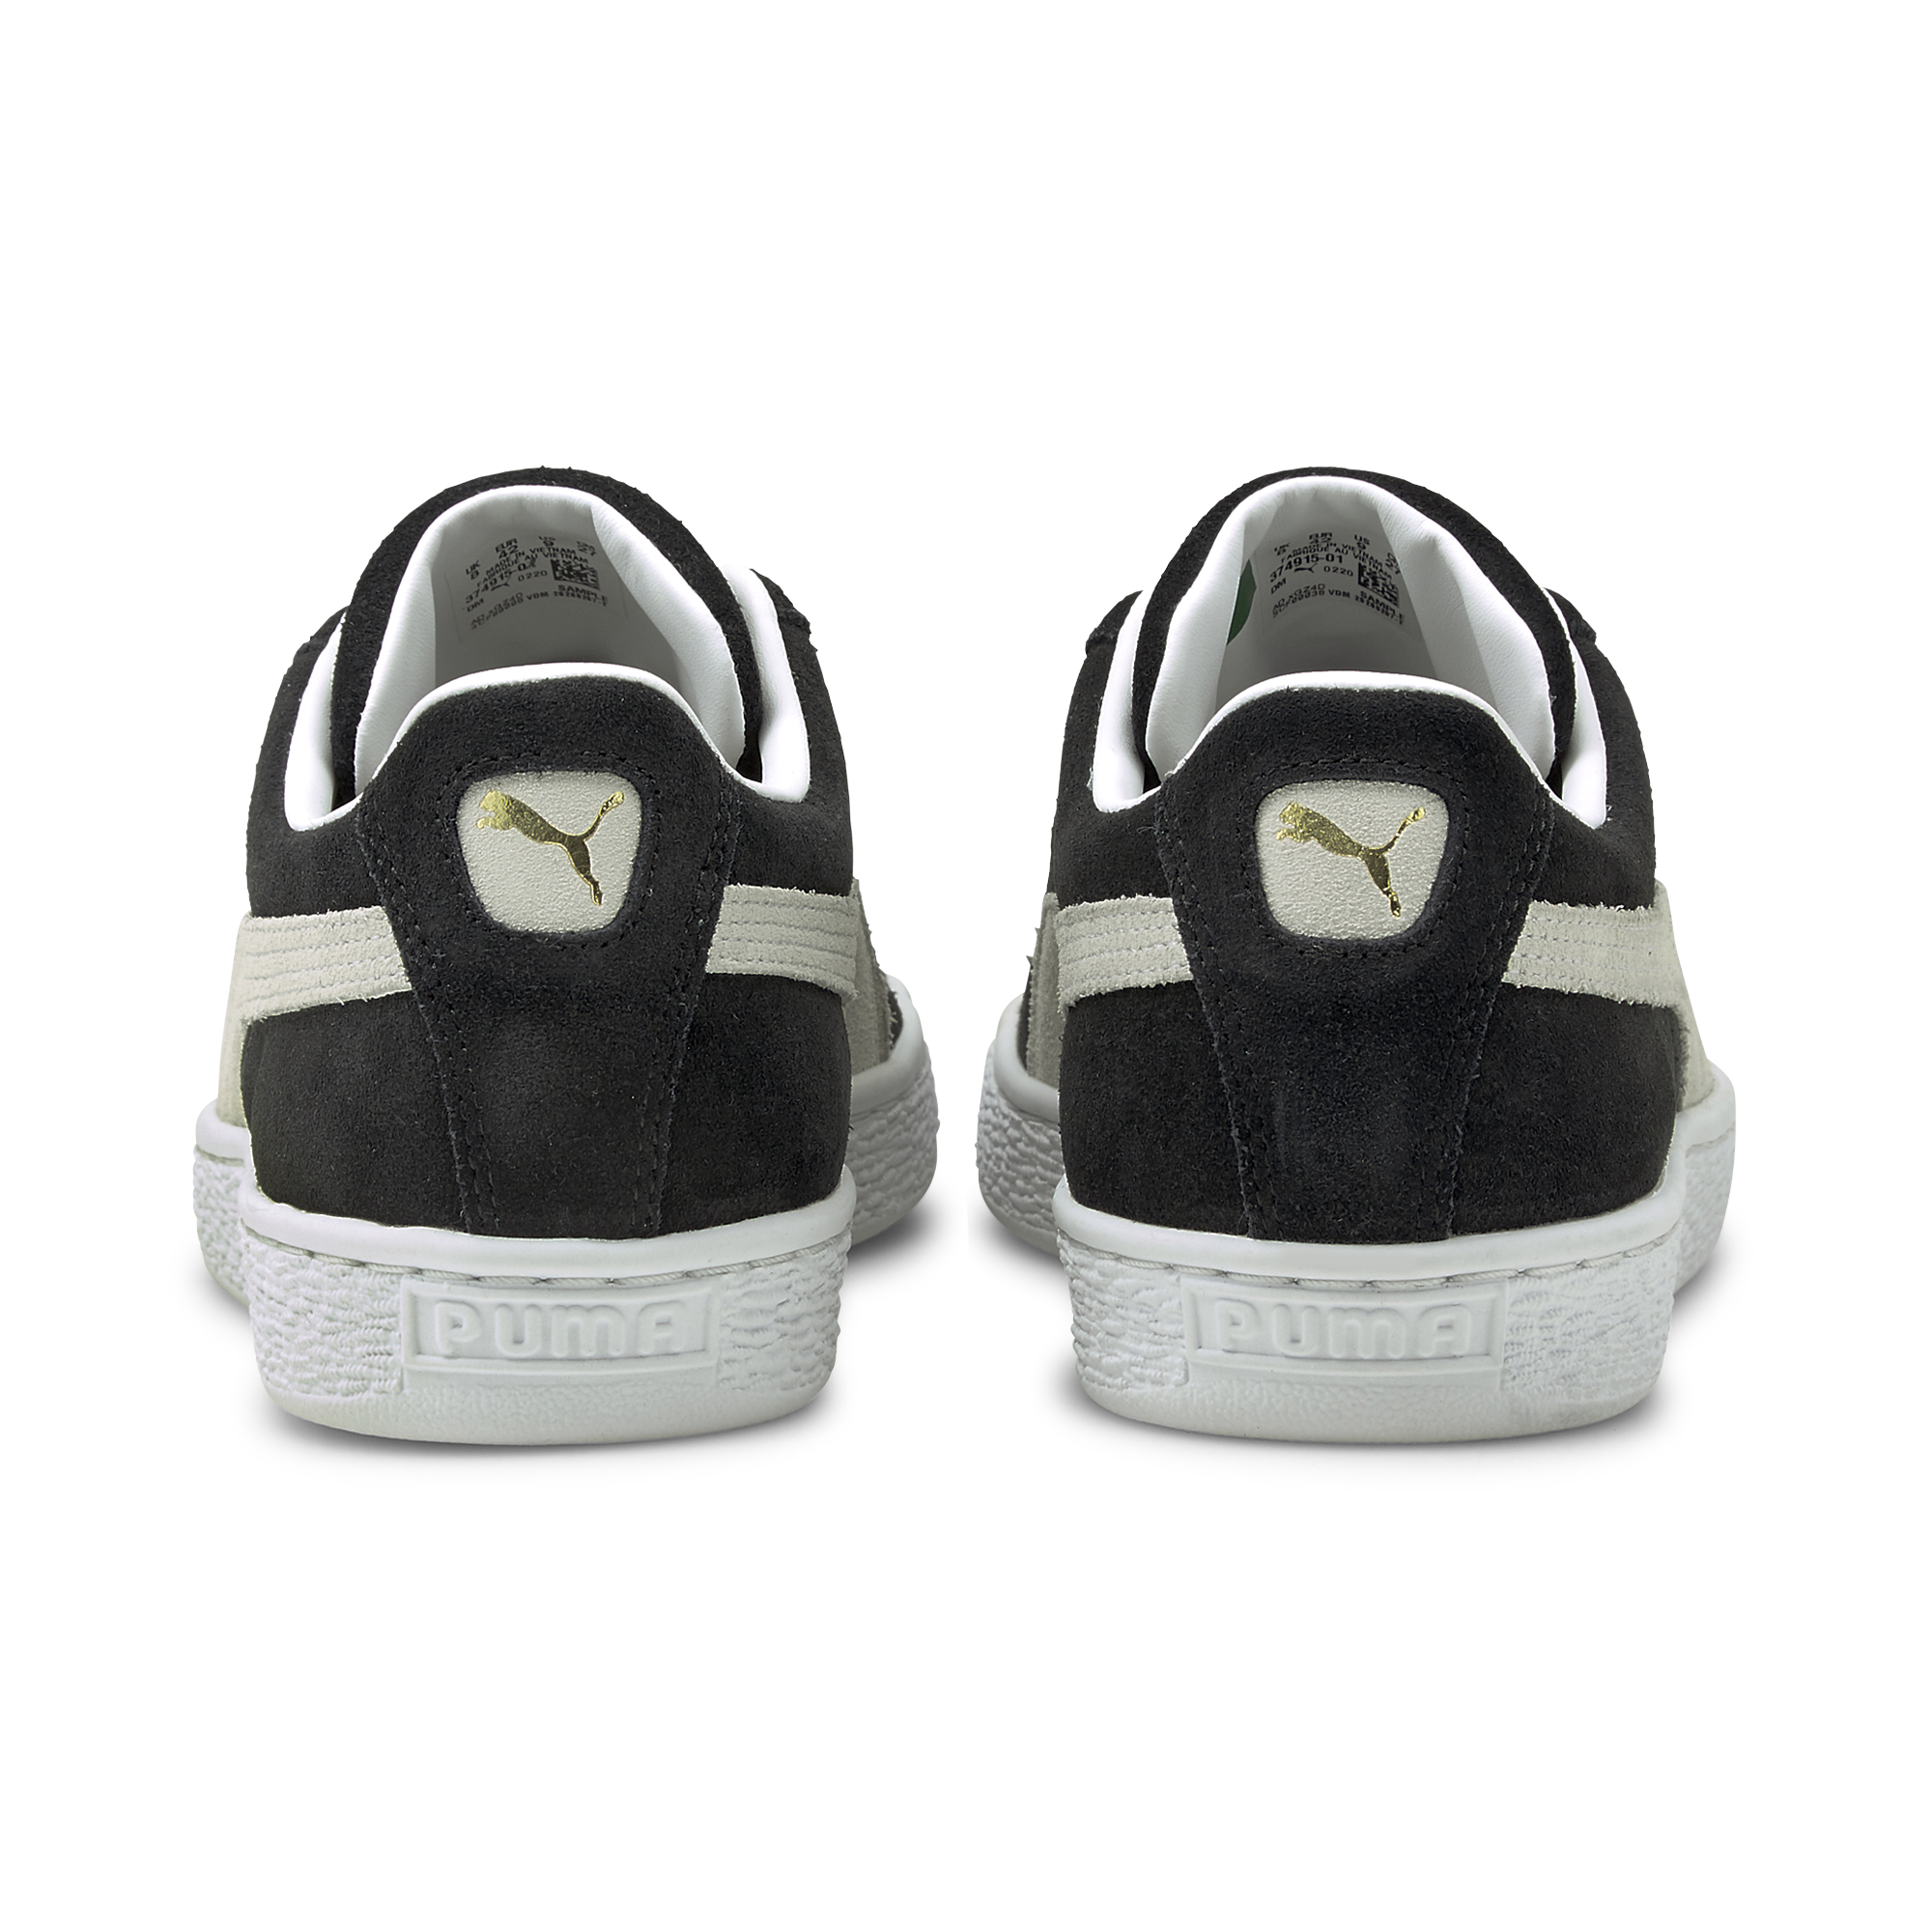  Suede Classic Xxi Sneakers, Sort/Hvid, 44.5